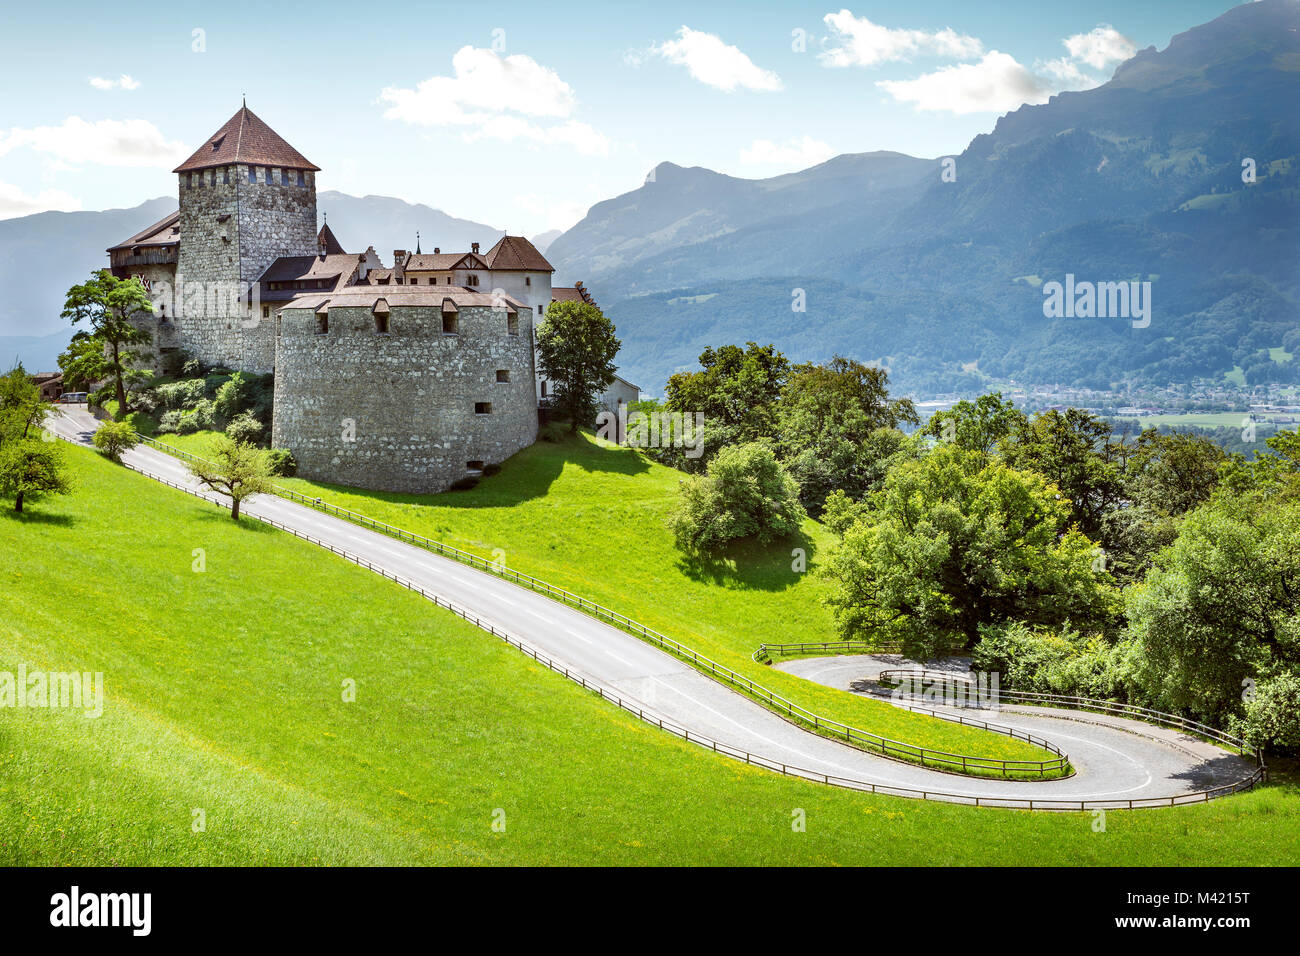 Medieval castle in Vaduz, Liechtenstein Stock Photo